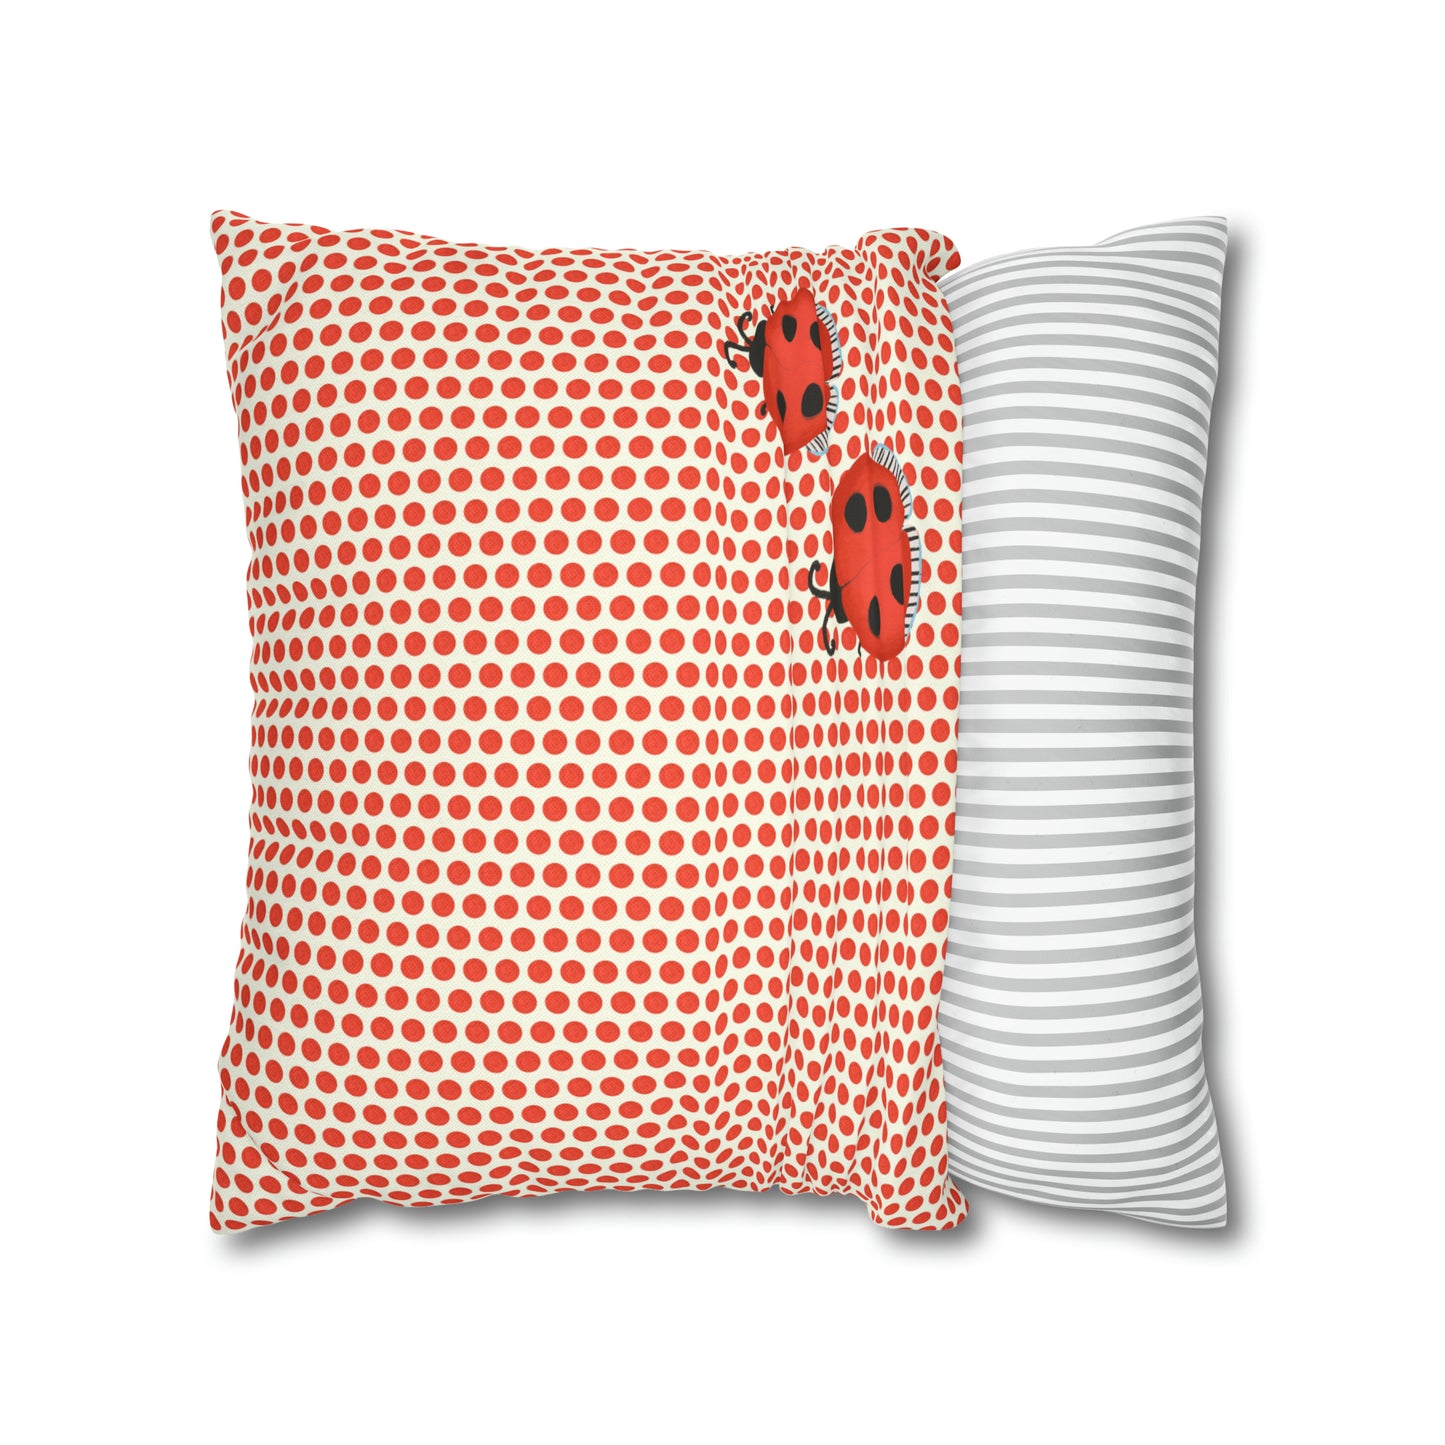 Ladybug Polka Dot Spun Polyester Square Pillowcase, Red and Cream Ladybug Throw Pillow, Mushroom Collection Pillow